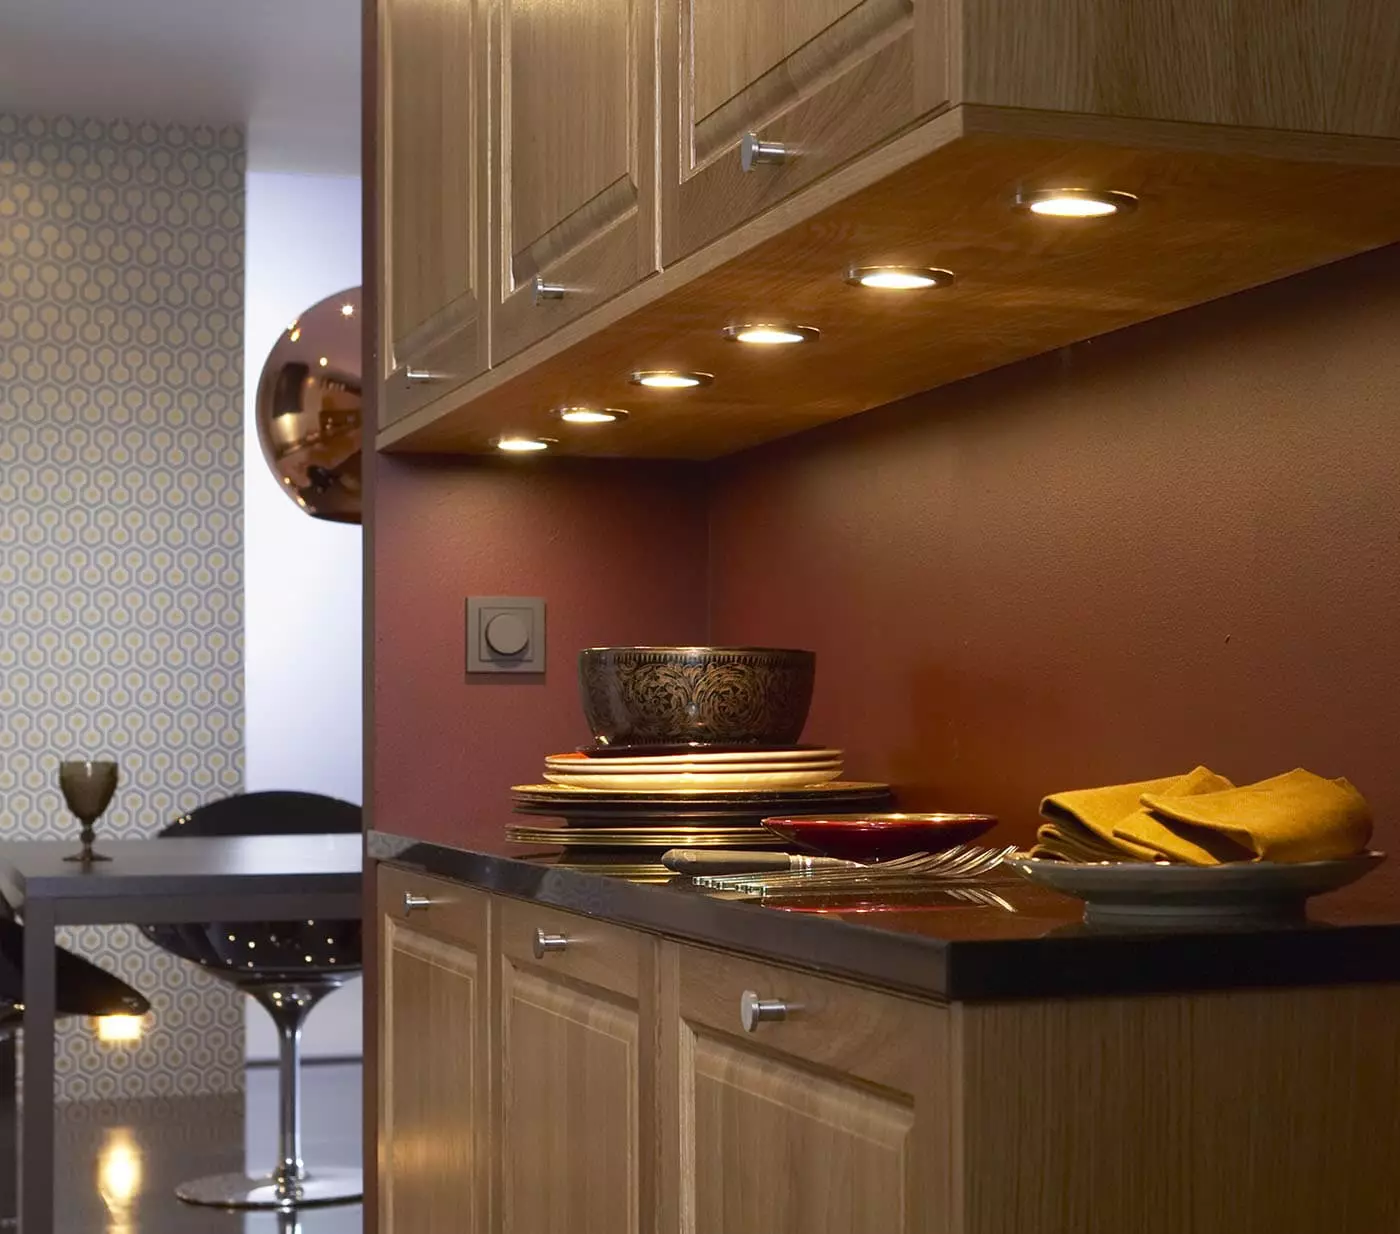 Virtuvės dizainas (179 nuotraukos): gražios virtuvės interjero idėjos bute, paprasti virtuvės dizaino parinktys. Kaip padaryti registraciją įdomu ir stilingu? Madingi dizaino sprendimai 186_129